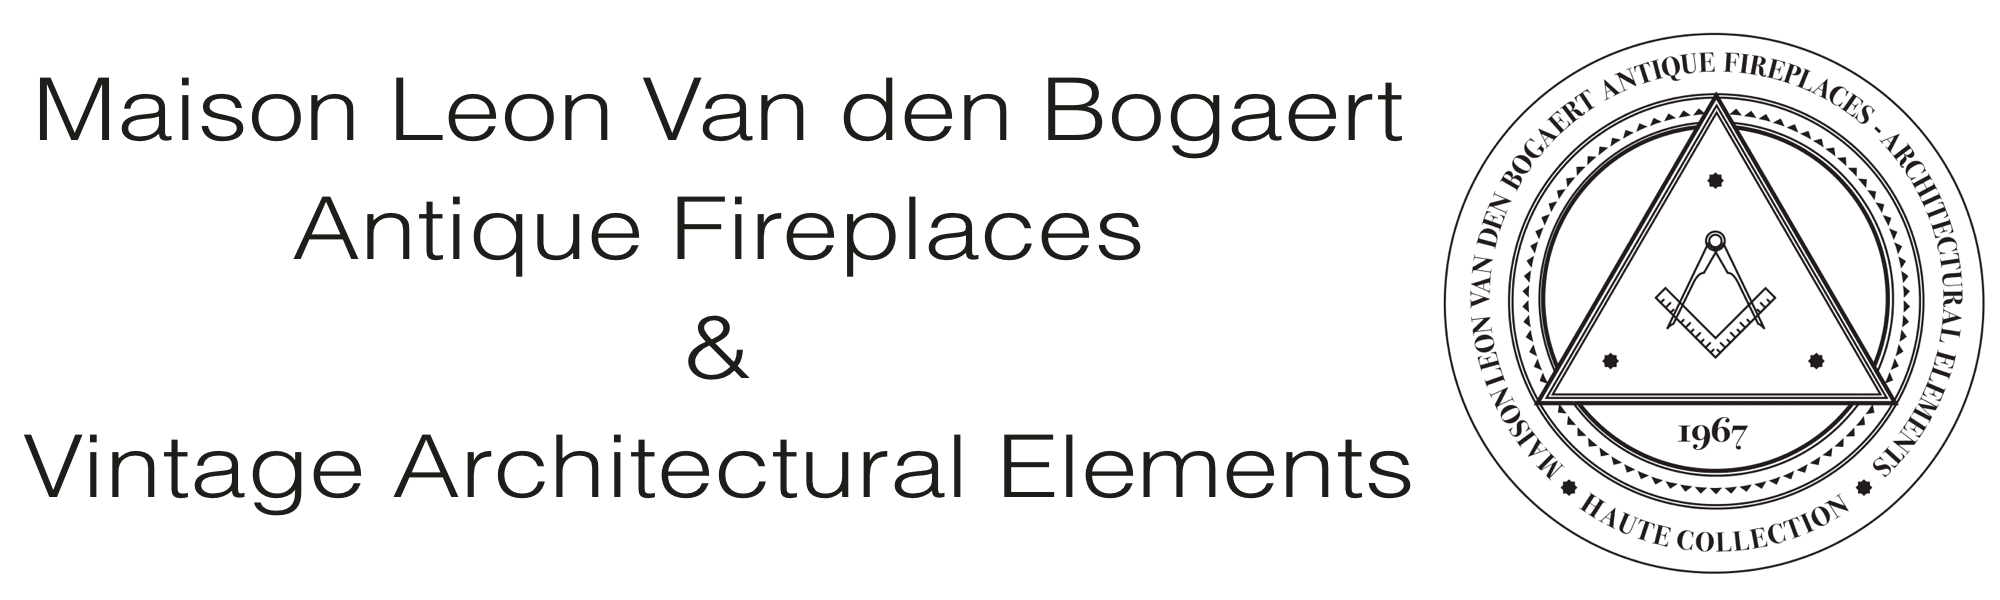 Maison Leon Van den Bogaert Antique Fireplaces and Architectural Elements